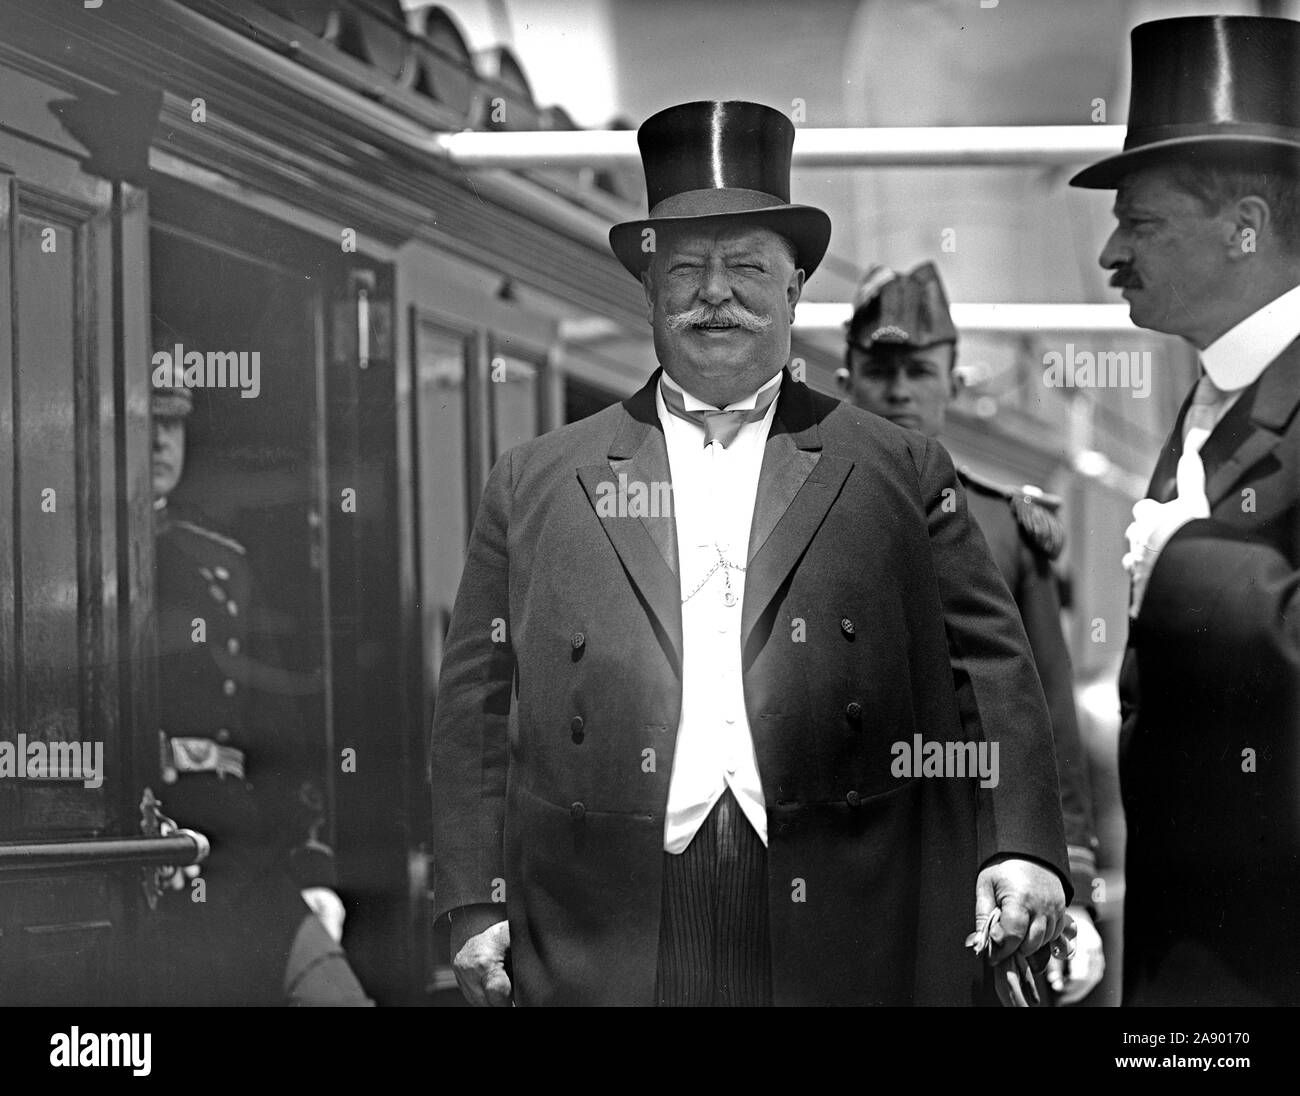 Le président William Howard Taft avec grand sourire à tophat, et de la queue. Très bien habillé le président Taft ca. 1912 Banque D'Images